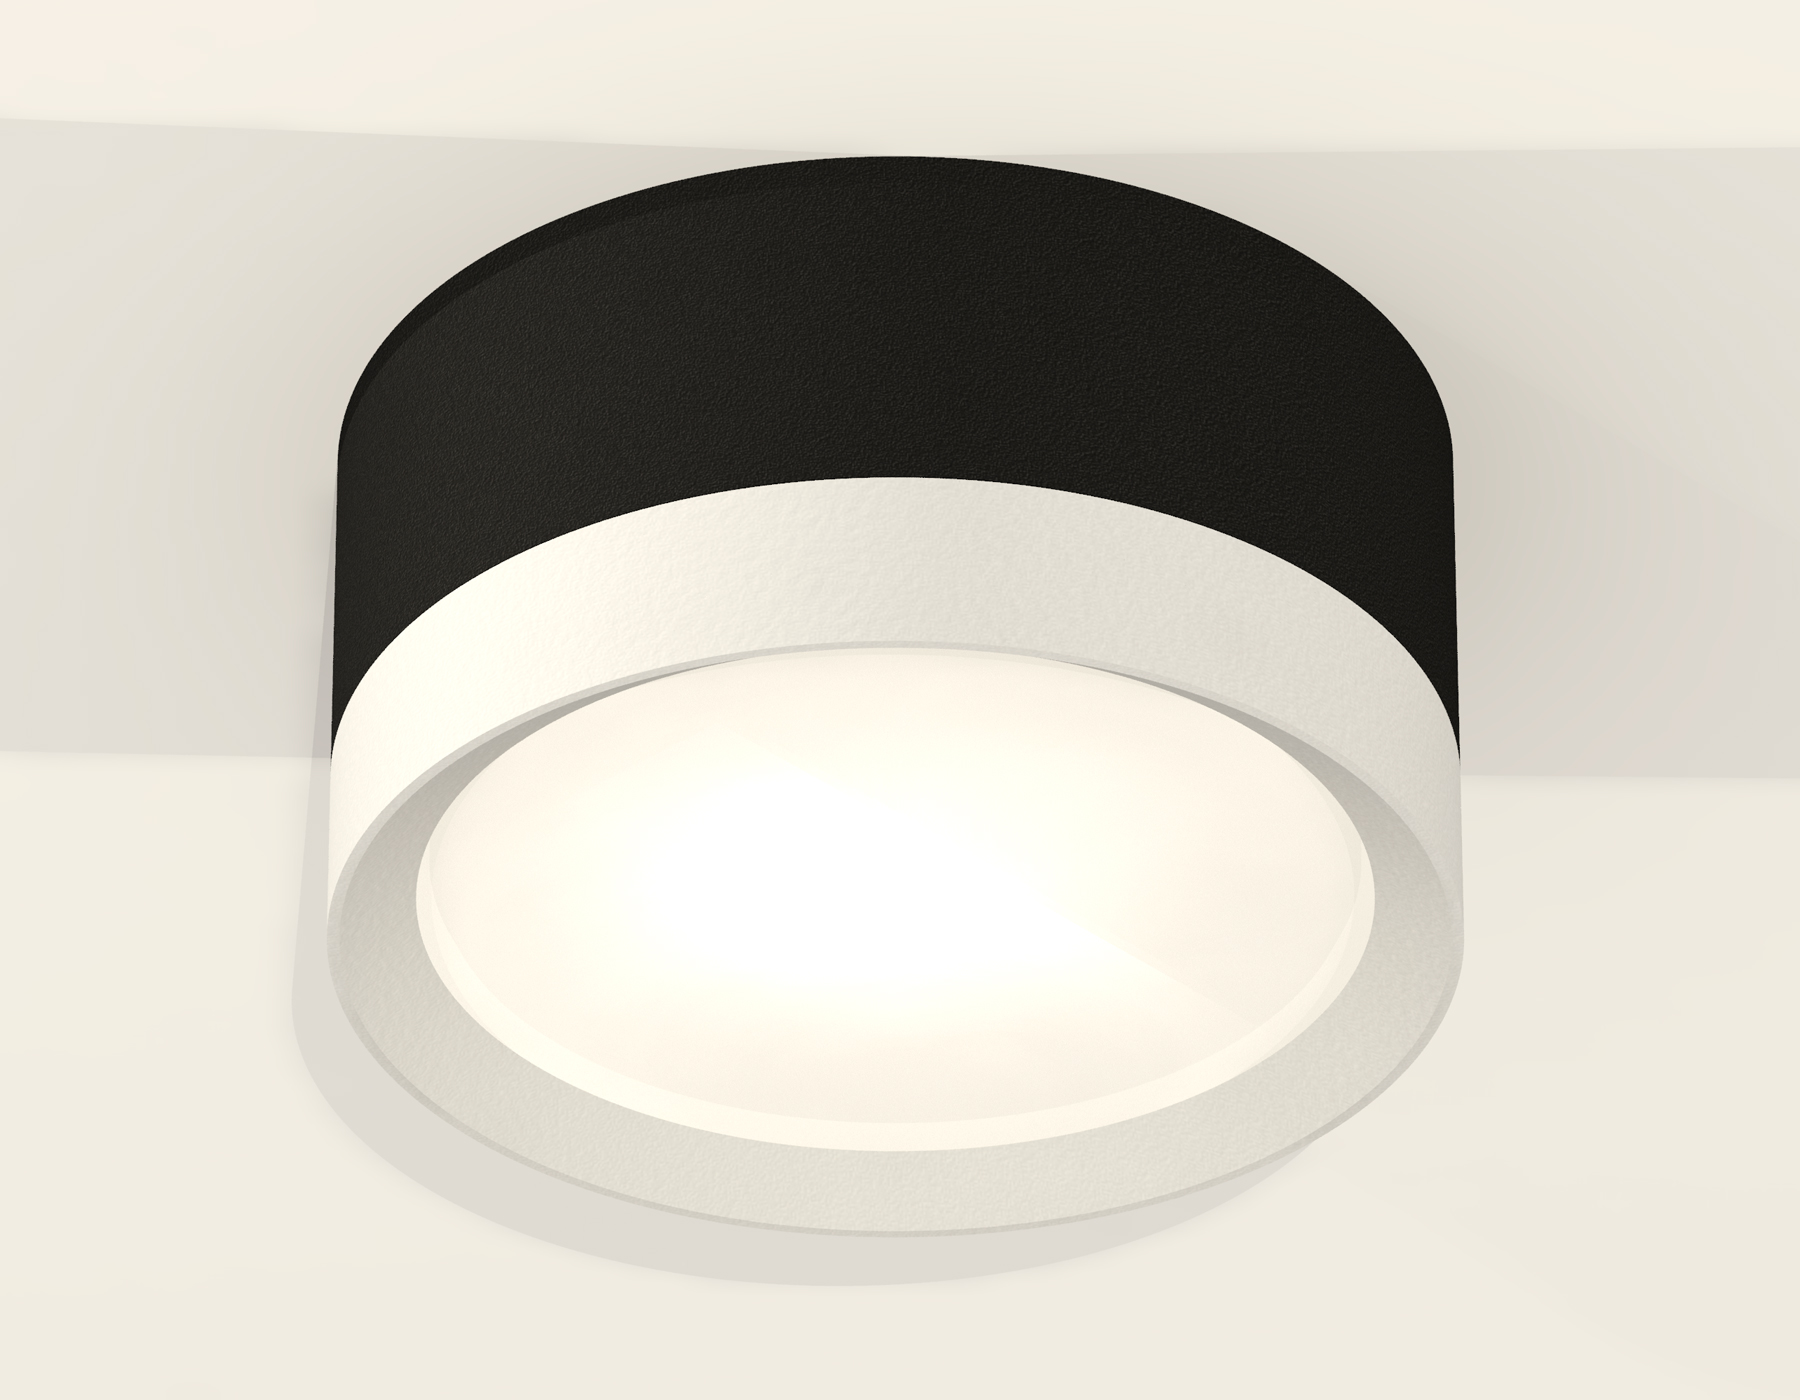 Потолочный светильник Ambrella Light Techno Spot XS8102001 (C8102, N8112)